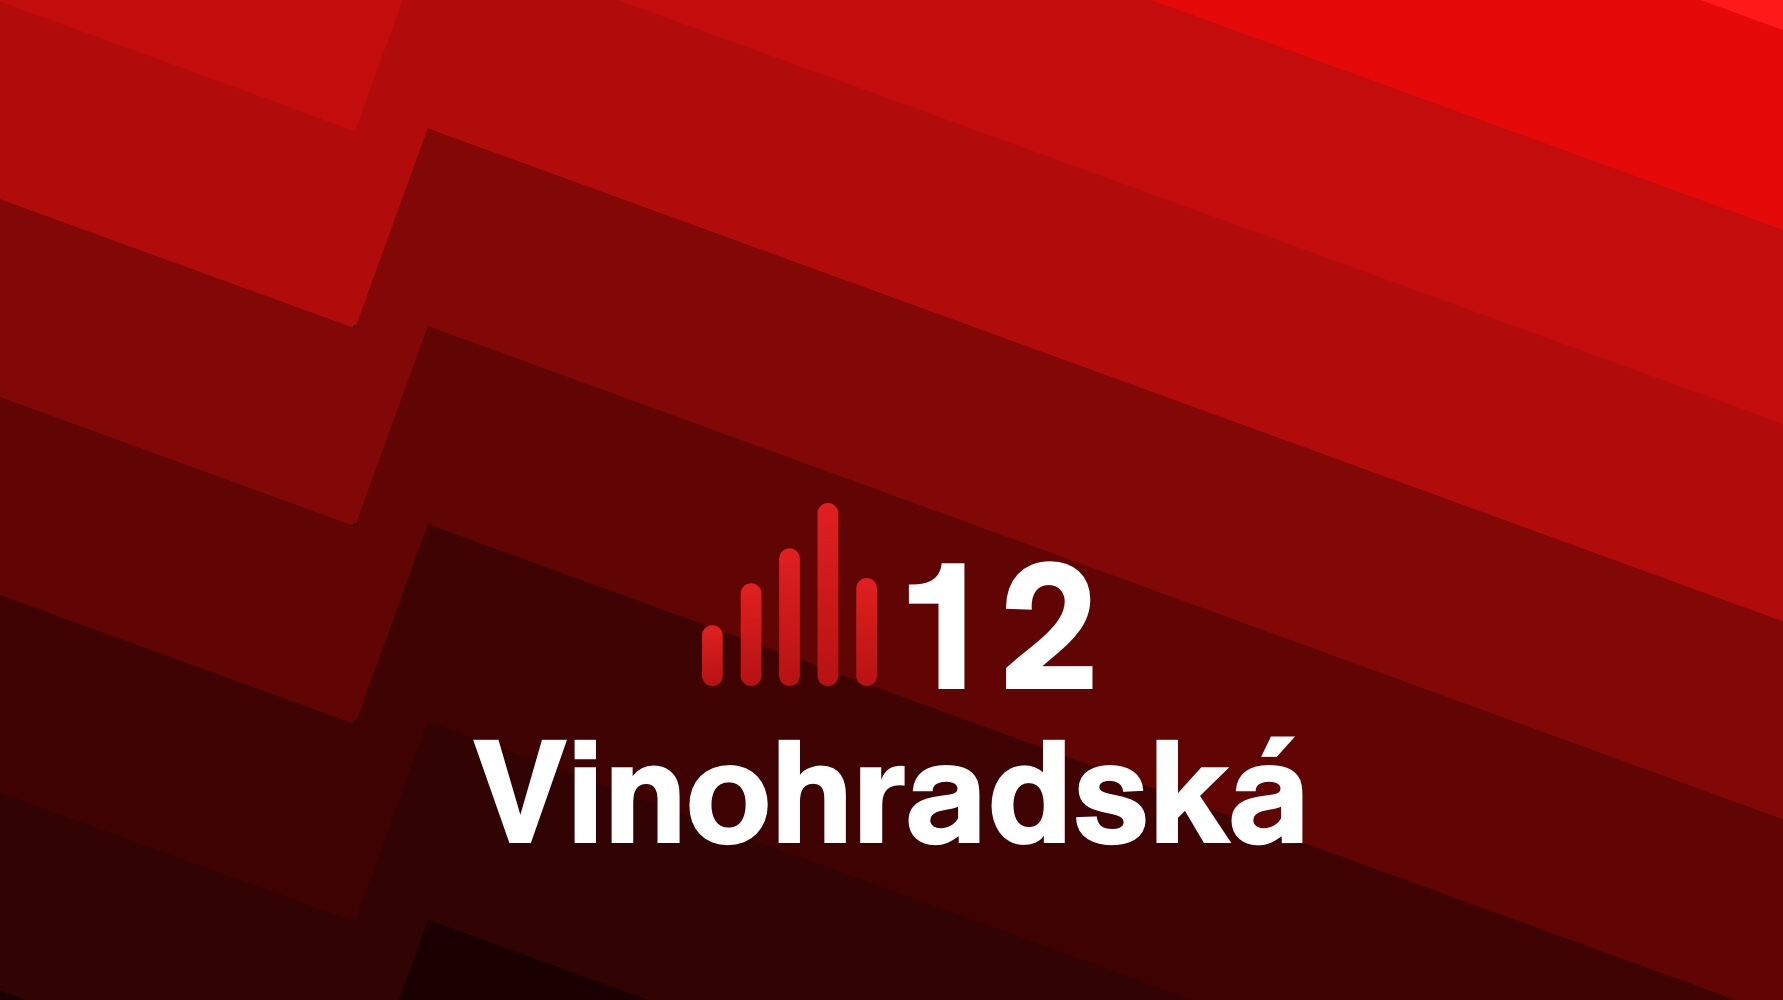 Podcast <b>Vinohradská 12</b> zvítězil ve veřejnoprávní kategorii soutěže Podcast roku 2019